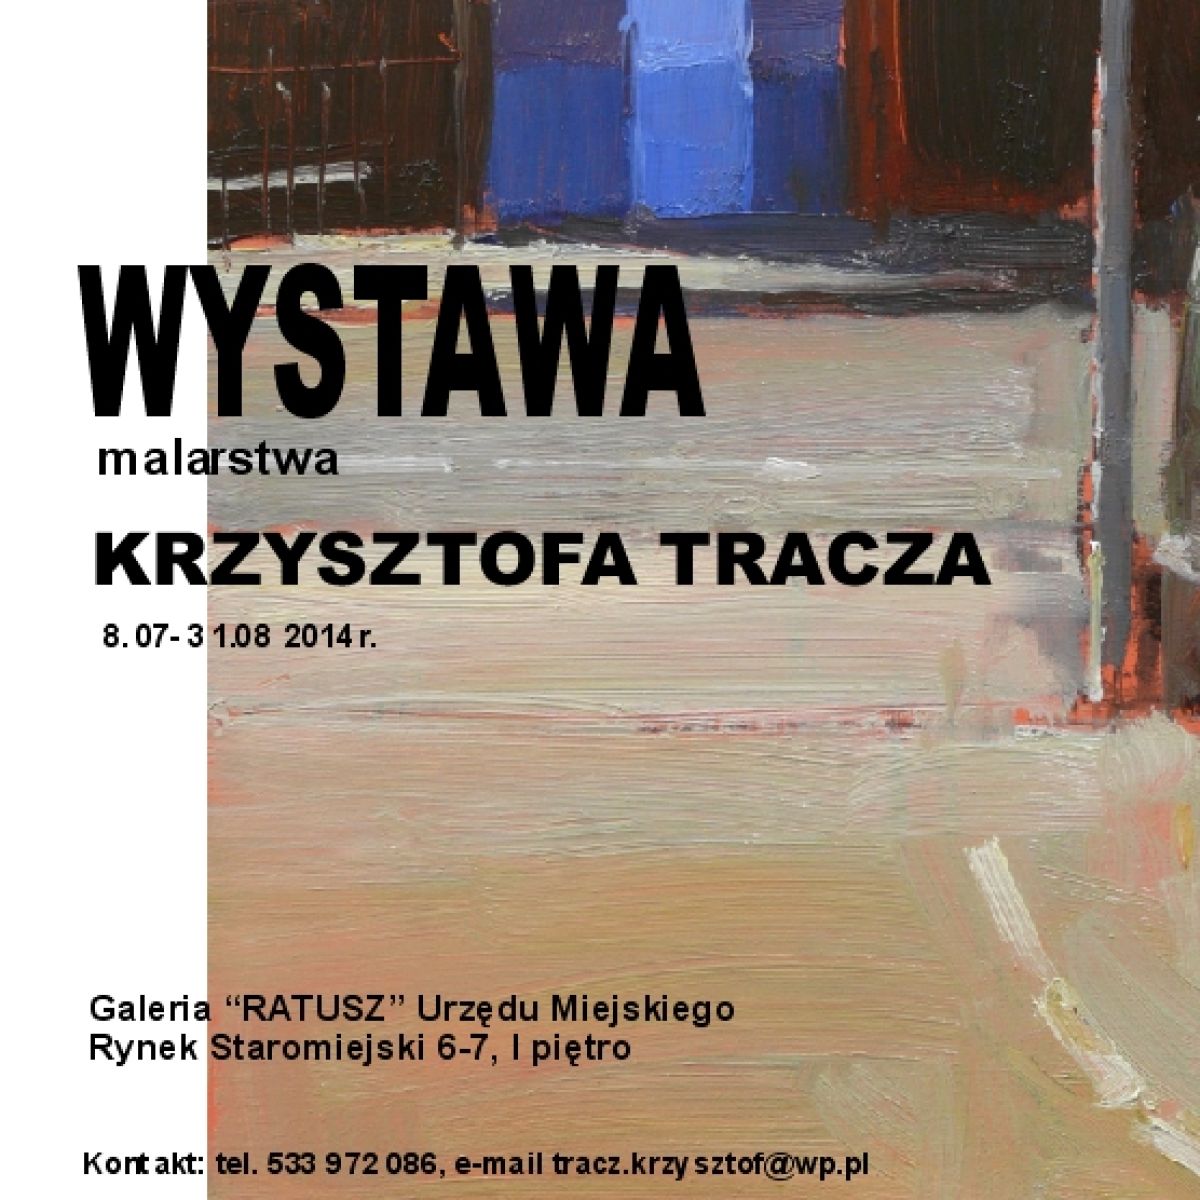 Zapraszamy na wystawę malarstwa Krzysztofa Tracza